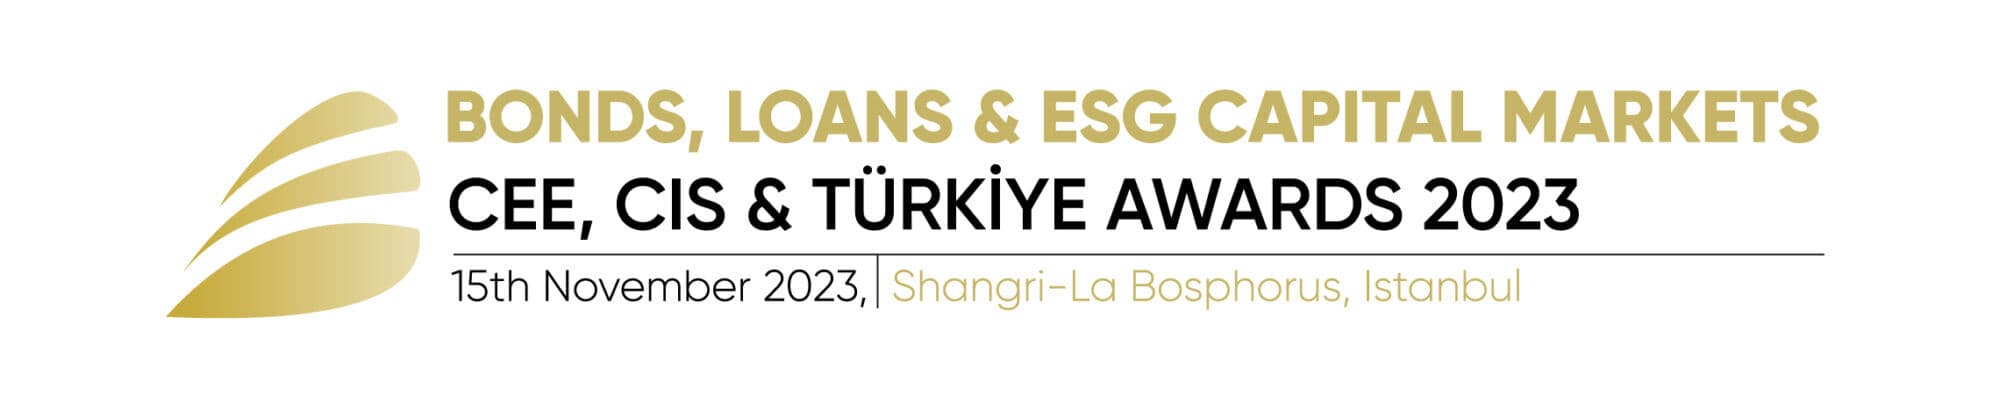 Bonds, Loans & ESG Capital Markets CEE, CIS & Türkiye Awards 2023